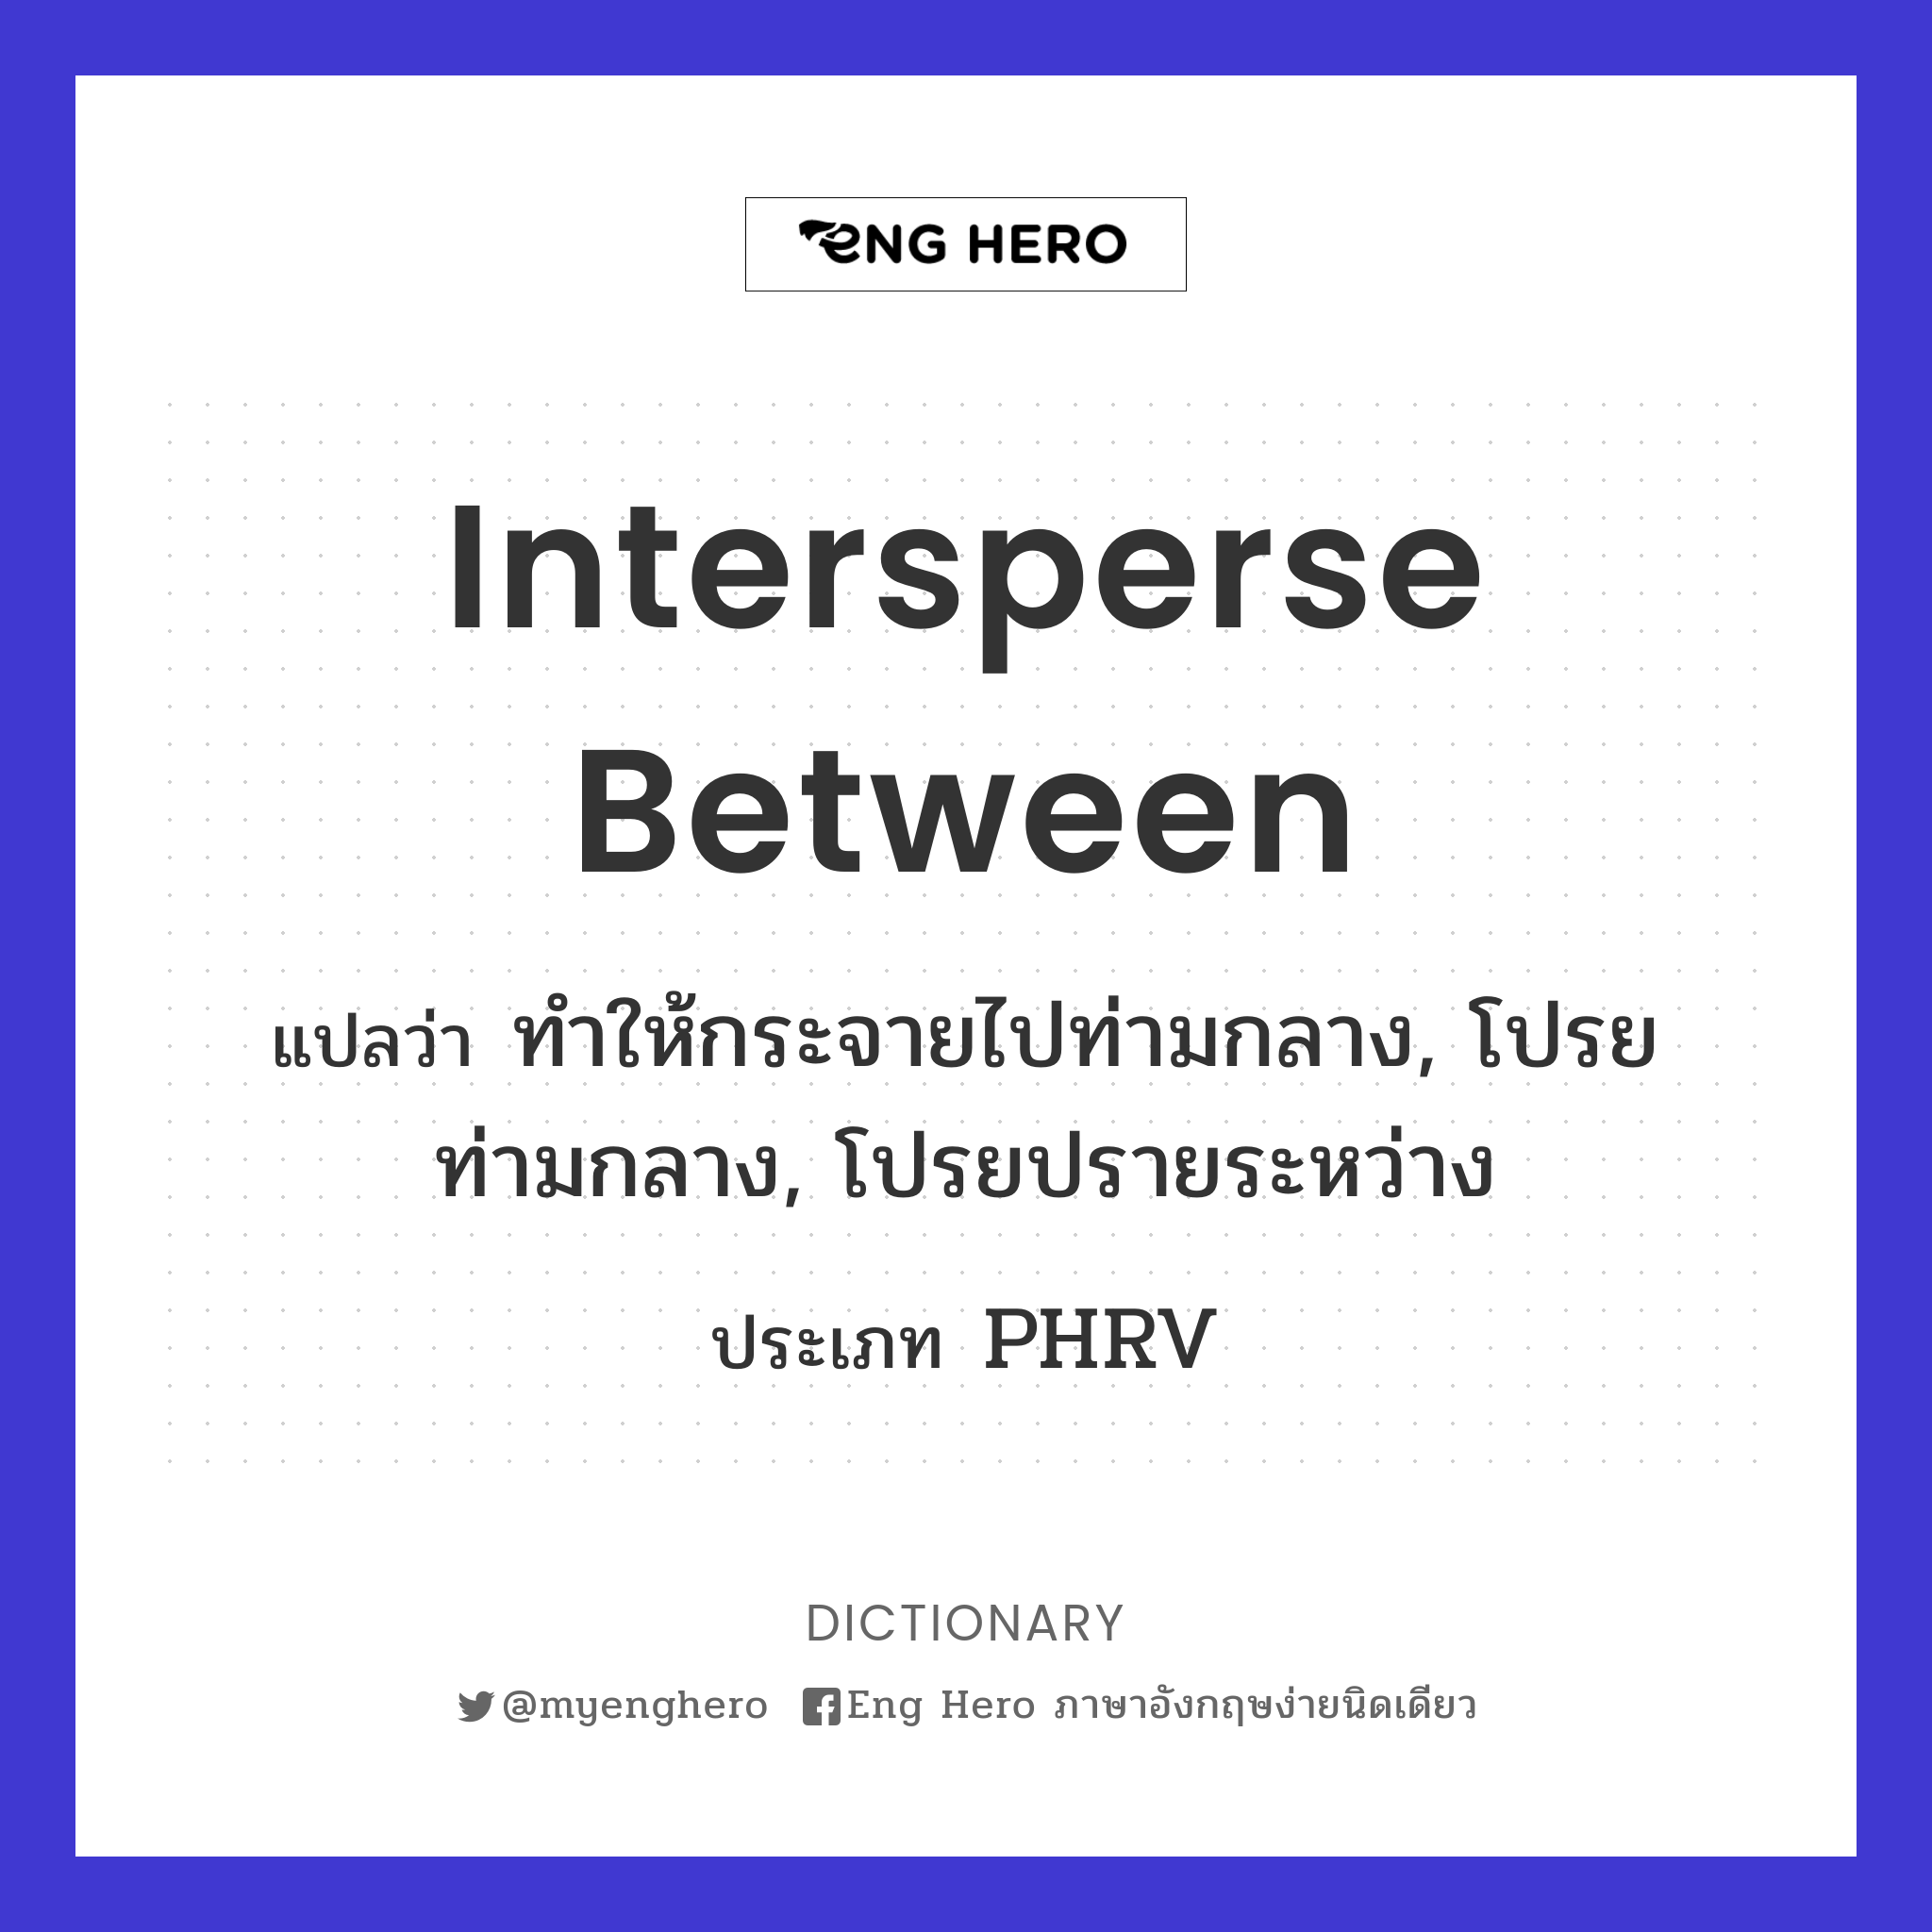 intersperse between